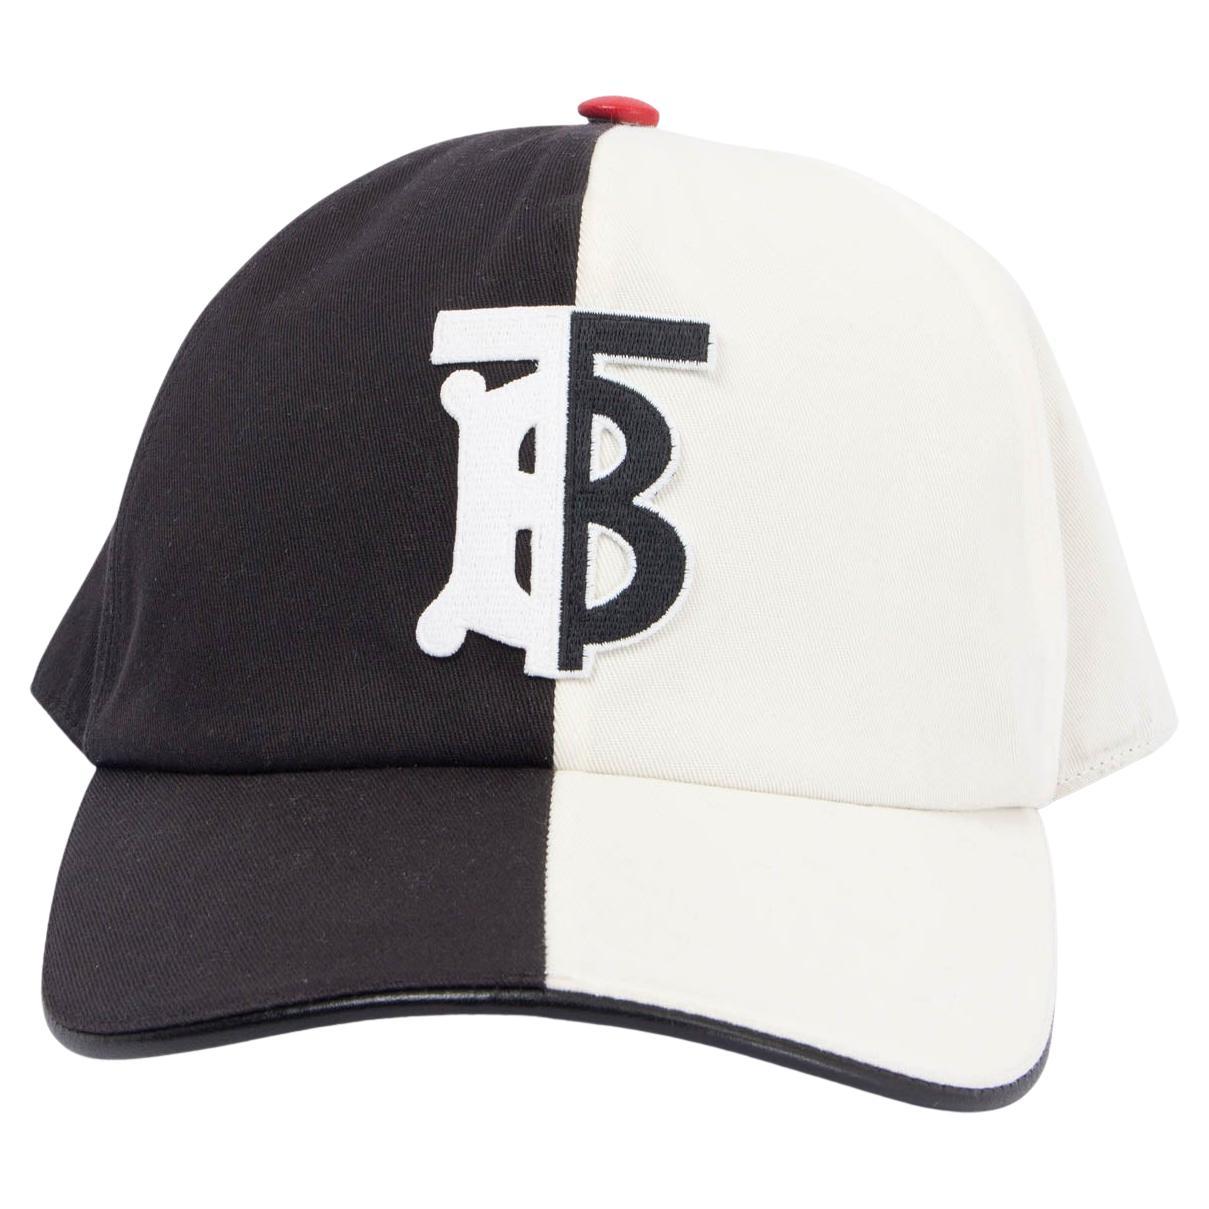 Chapeau de baseball BURBERRY en coton noir et blanc avec logo MONOGRAM, taille S en vente